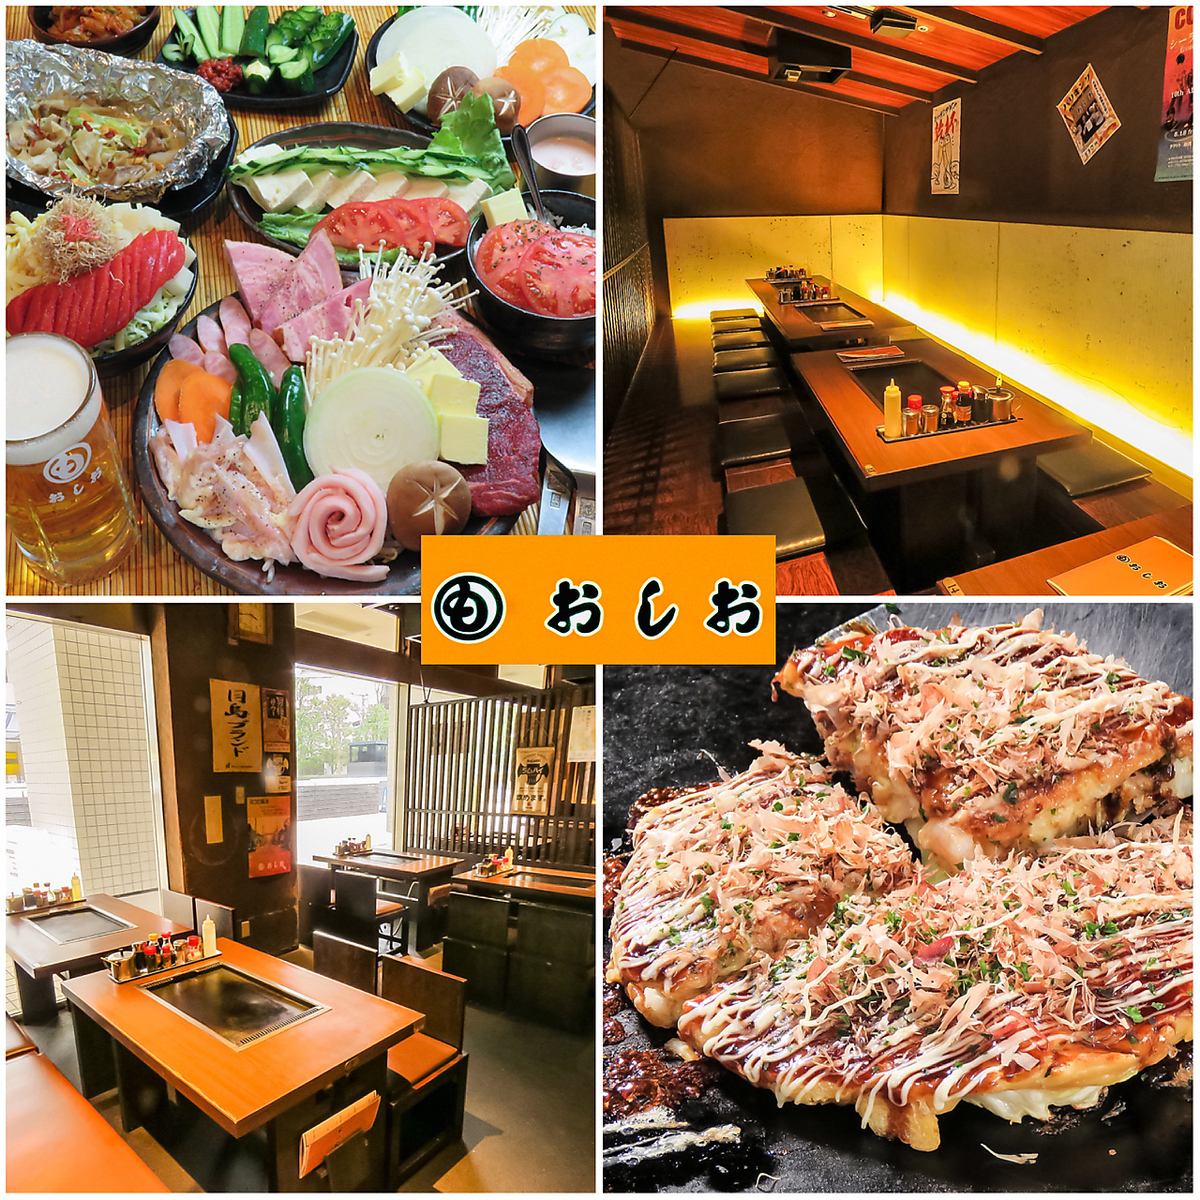 ◆月岛站步行1分钟◆如果想吃美味的Monja＆Okonomiyaki，建议在这里参加宴会